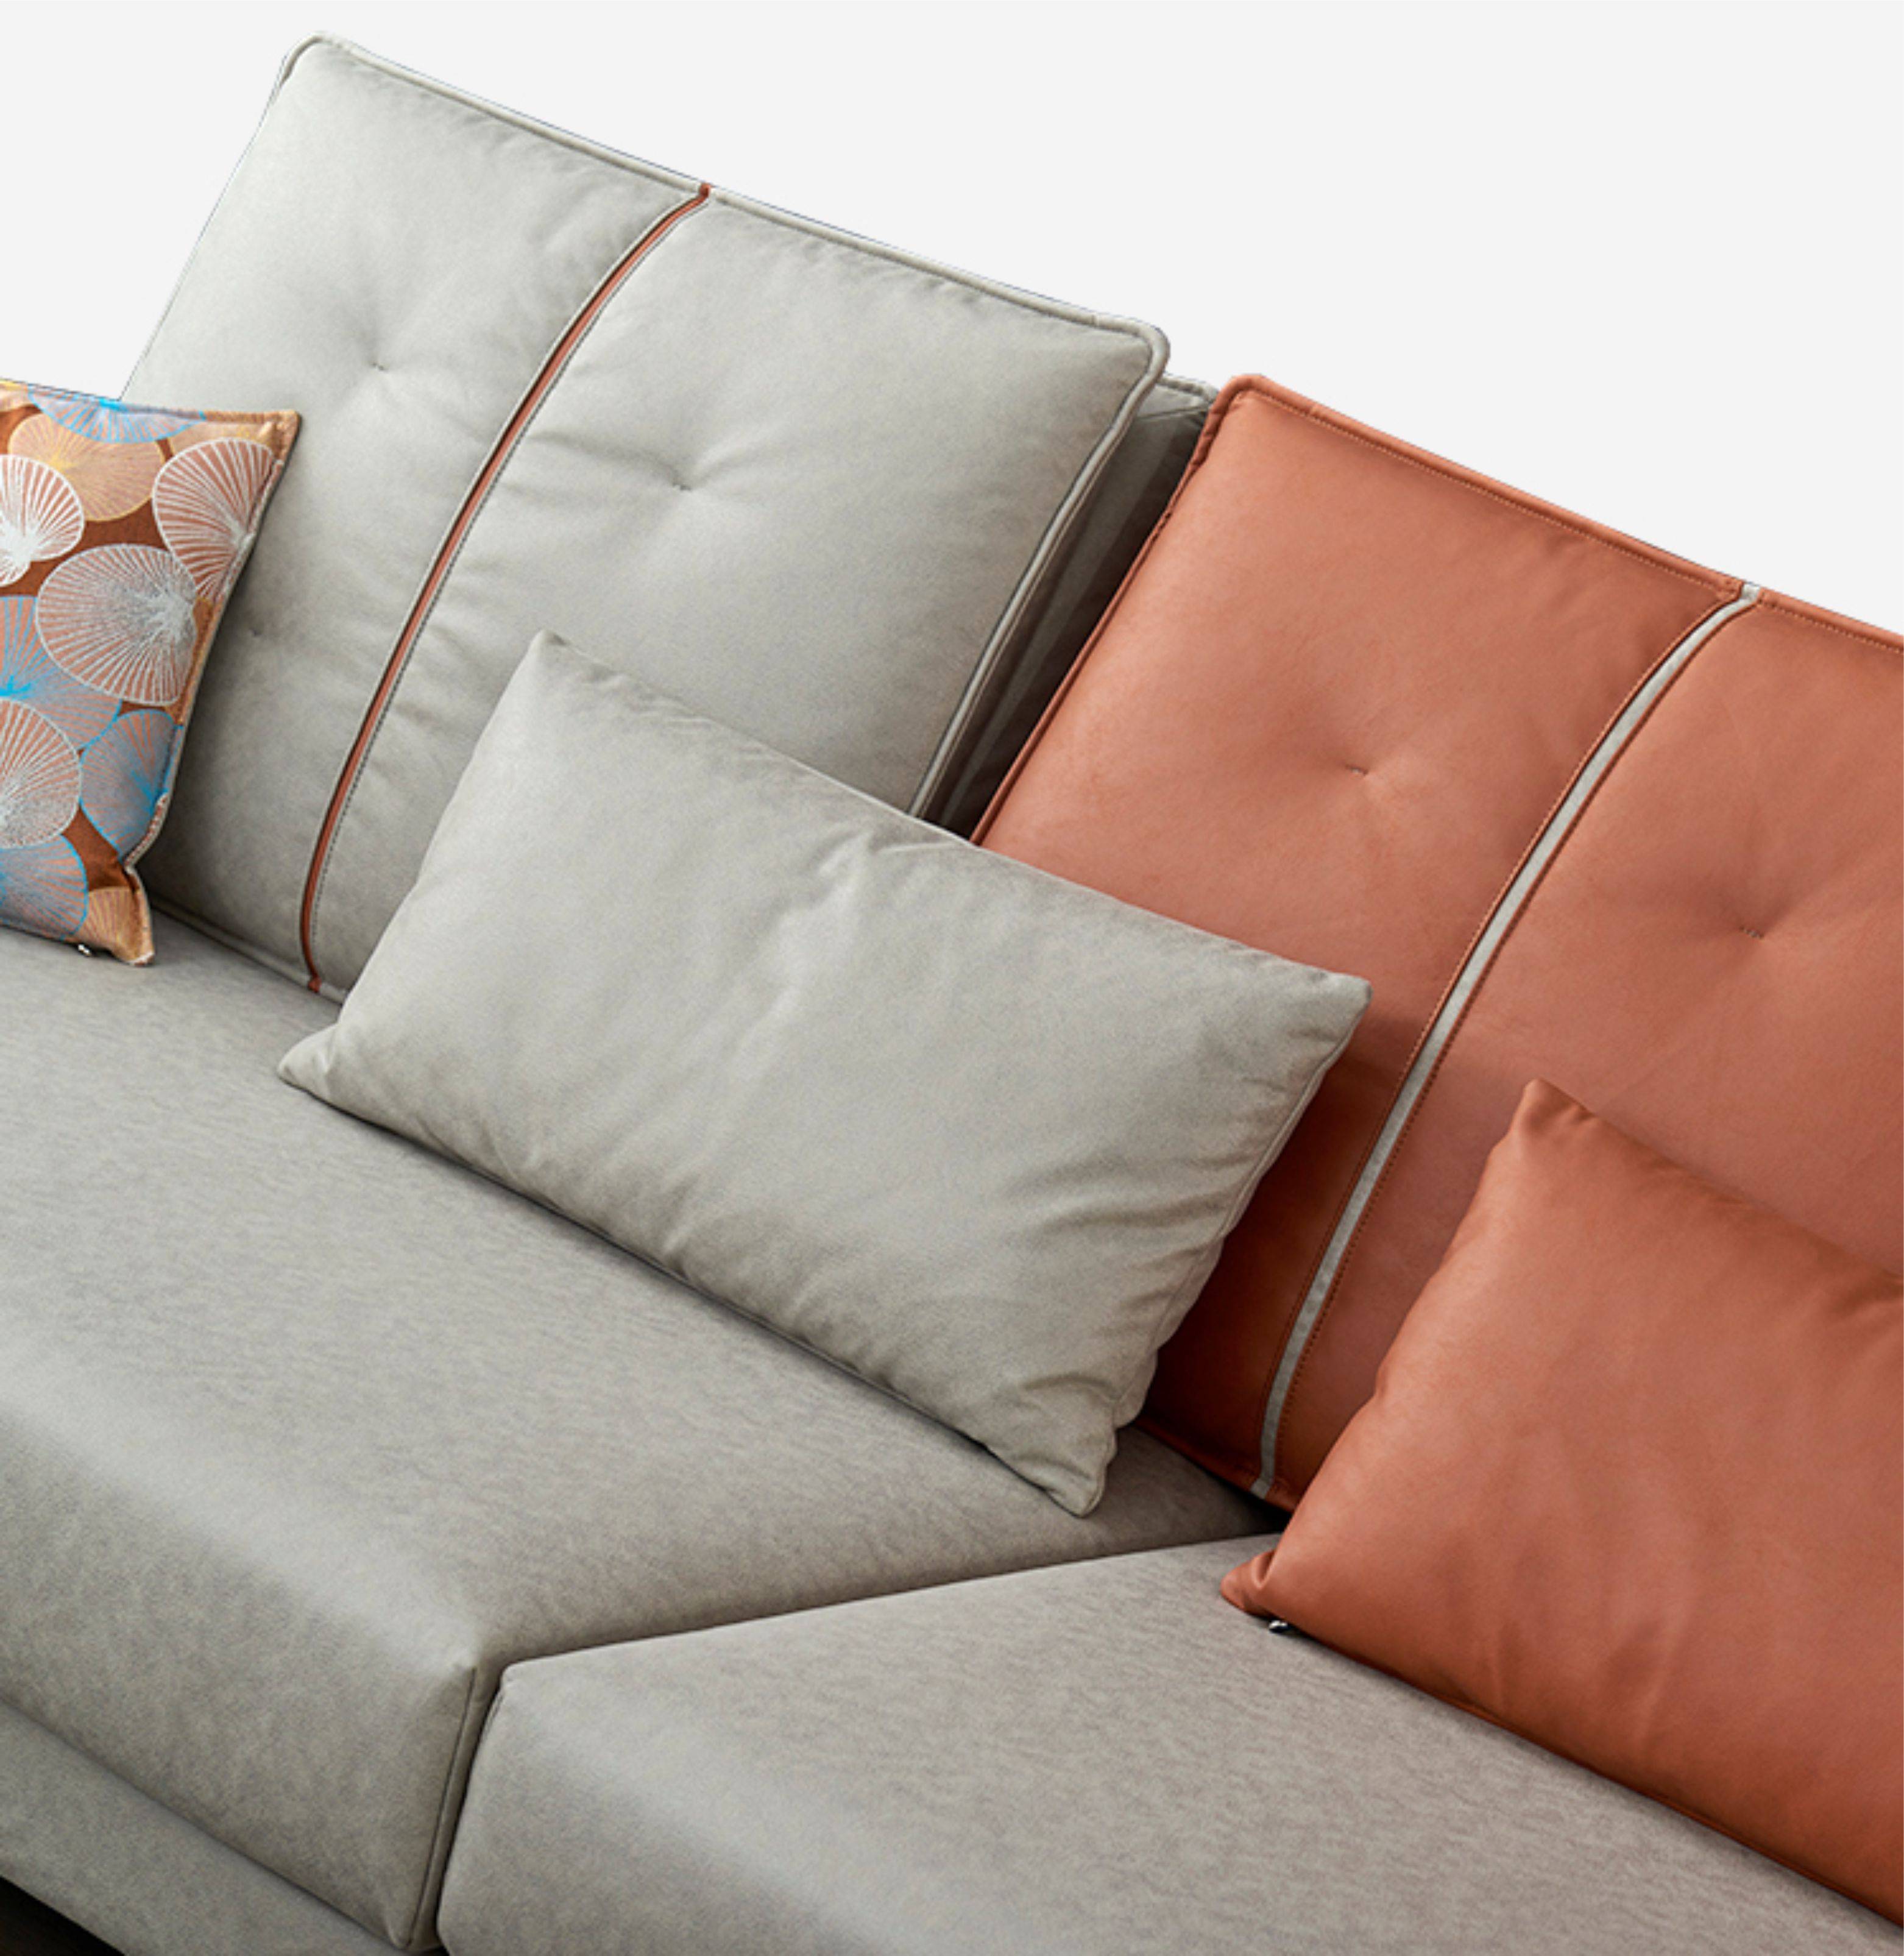 现代休闲科技布沙发,真的不pick吗?